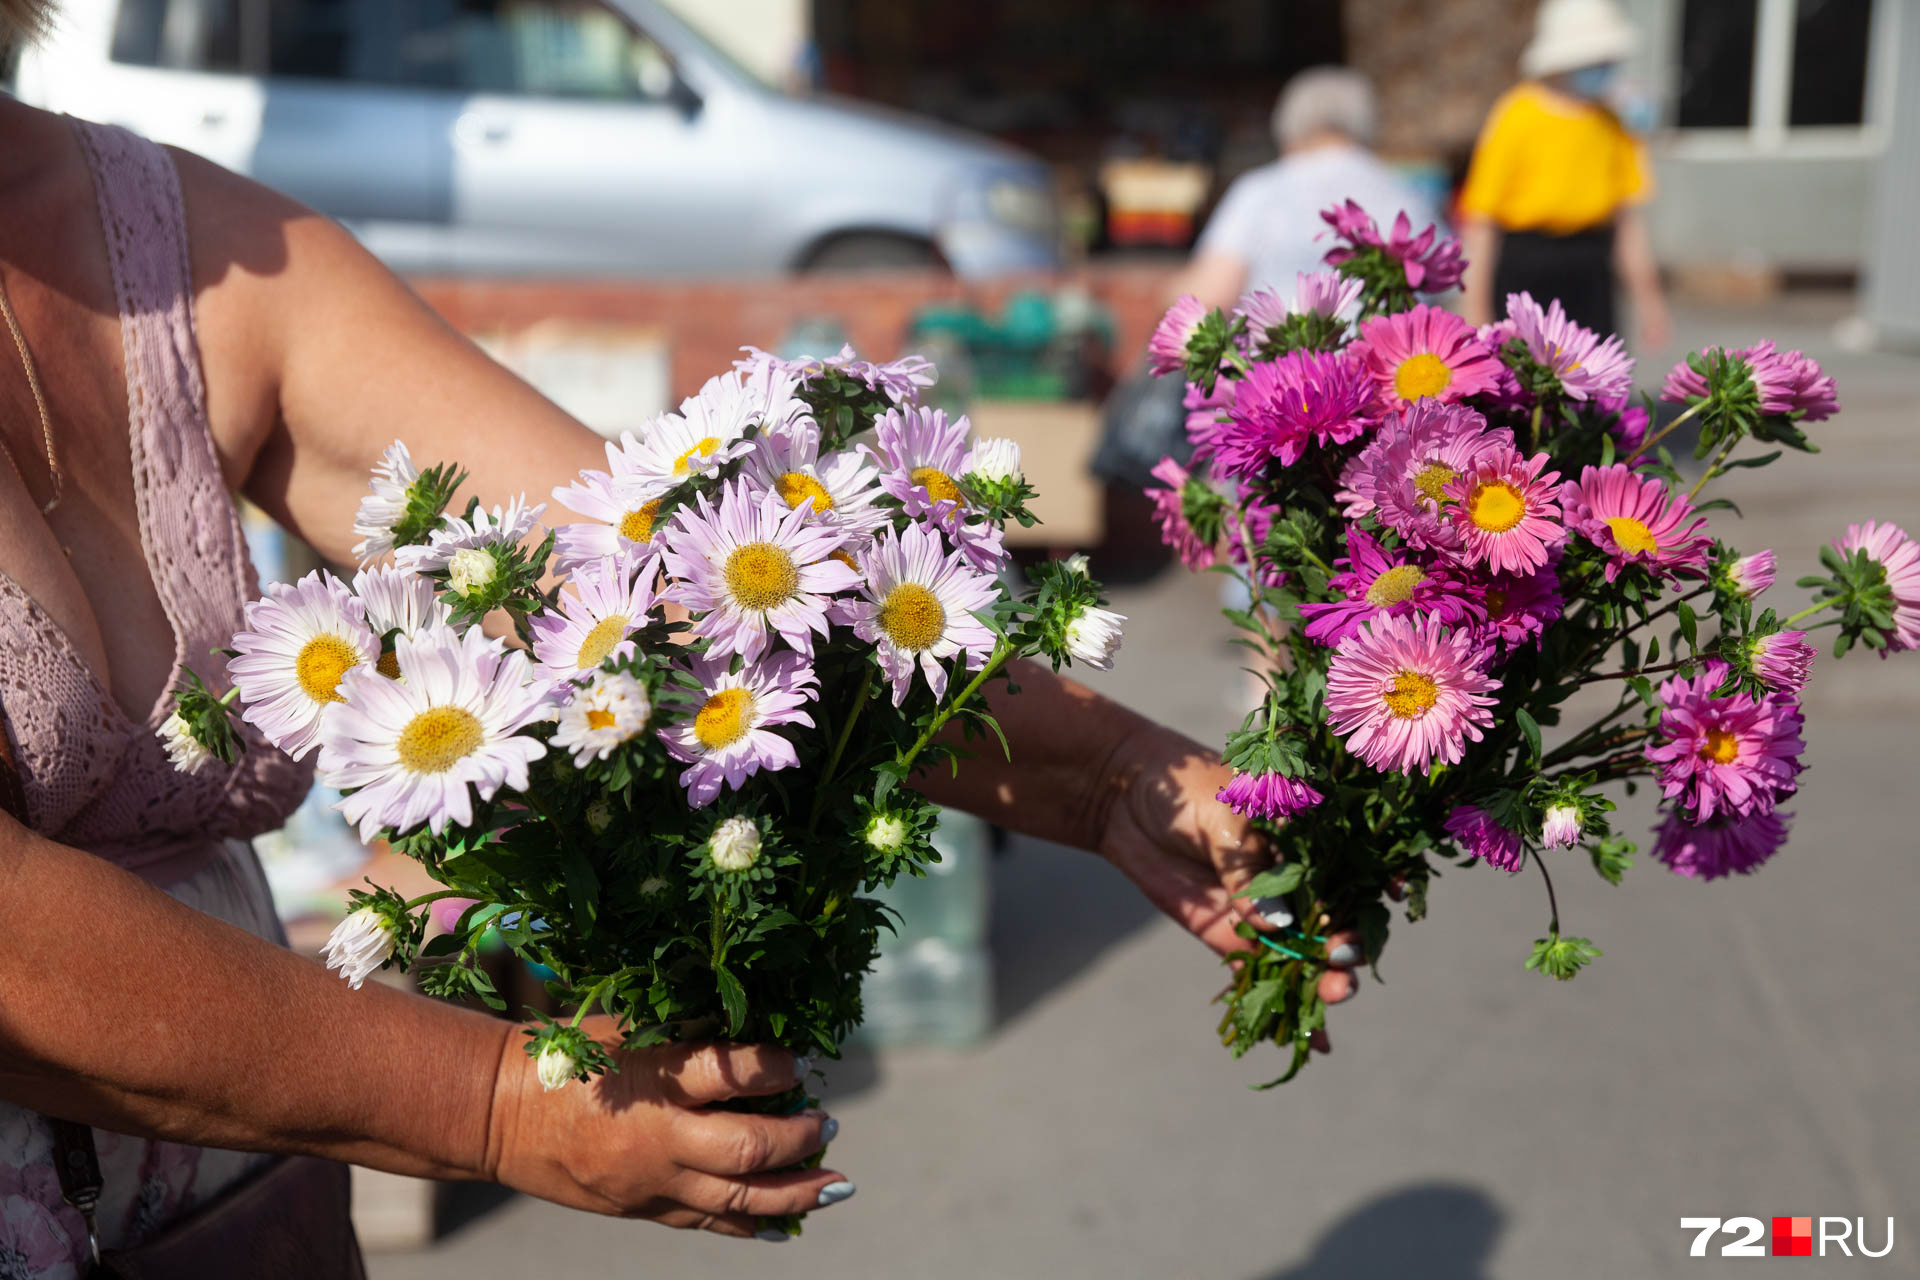 Дарите цветы разные и без повода. И не забывайте про акцию: купи что-нибудь у бабушки. Таким образом можно отблагодарить ее за красоту и чуть-чуть помочь финансово